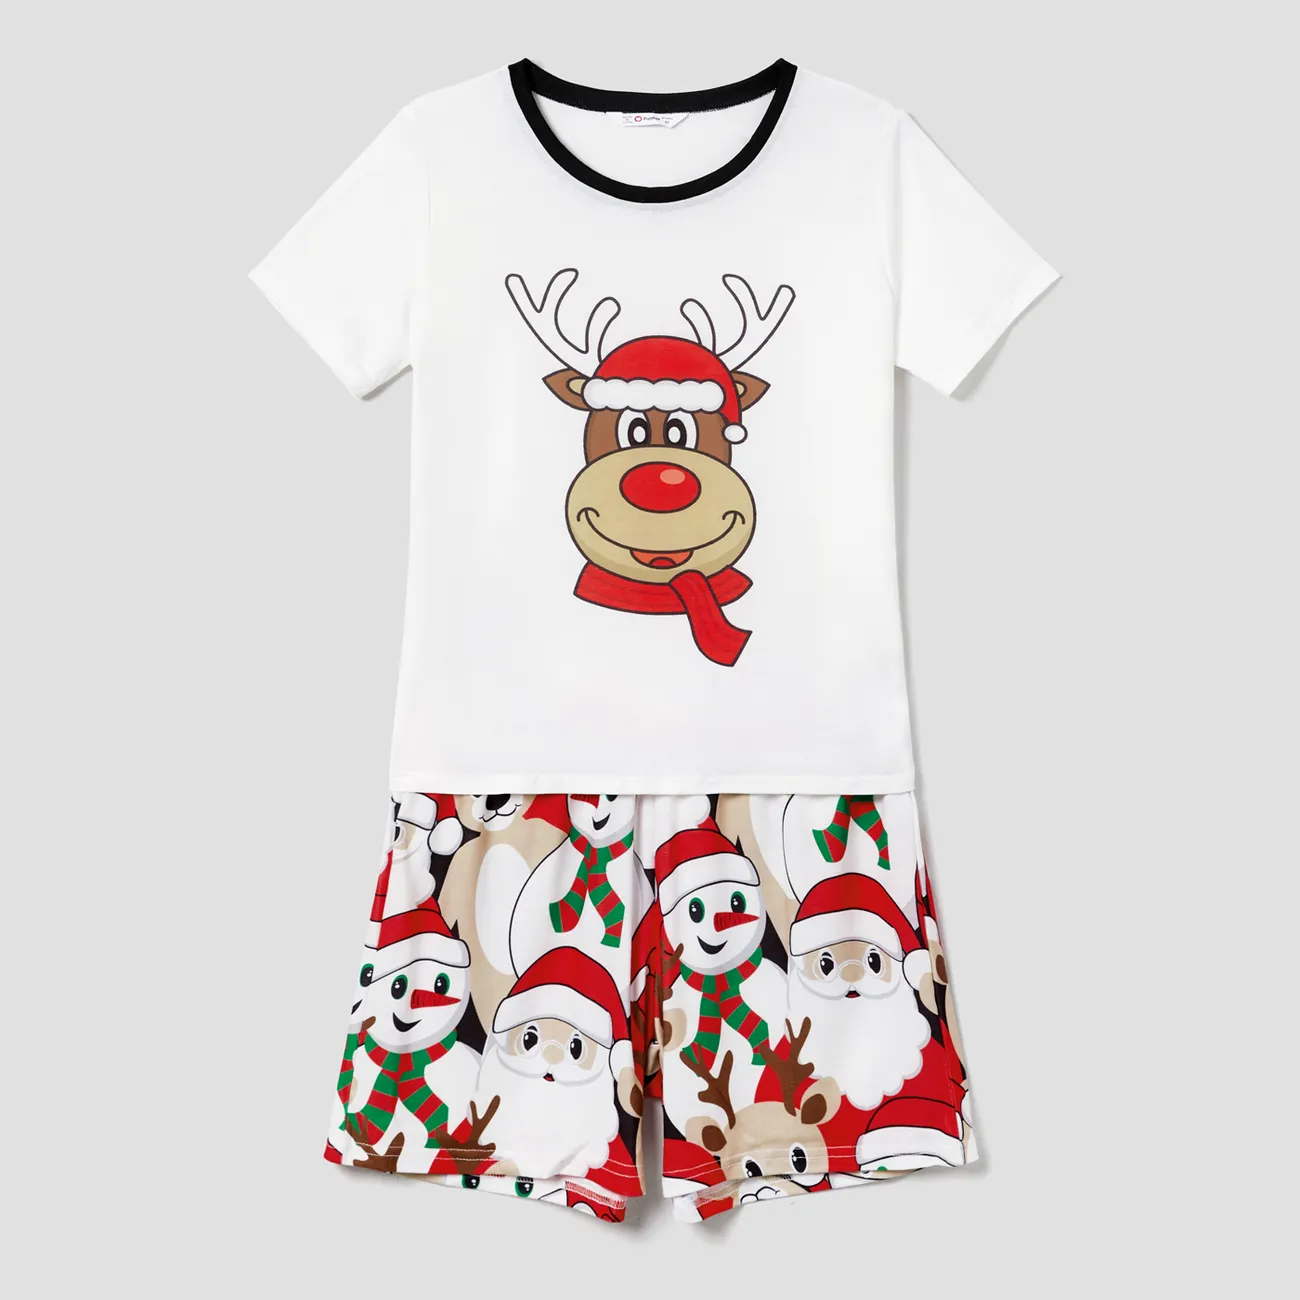 Weihnachten Familien-Looks Kurzärmelig Familien-Outfits Pyjamas (Flame Resistant) bunt big image 1